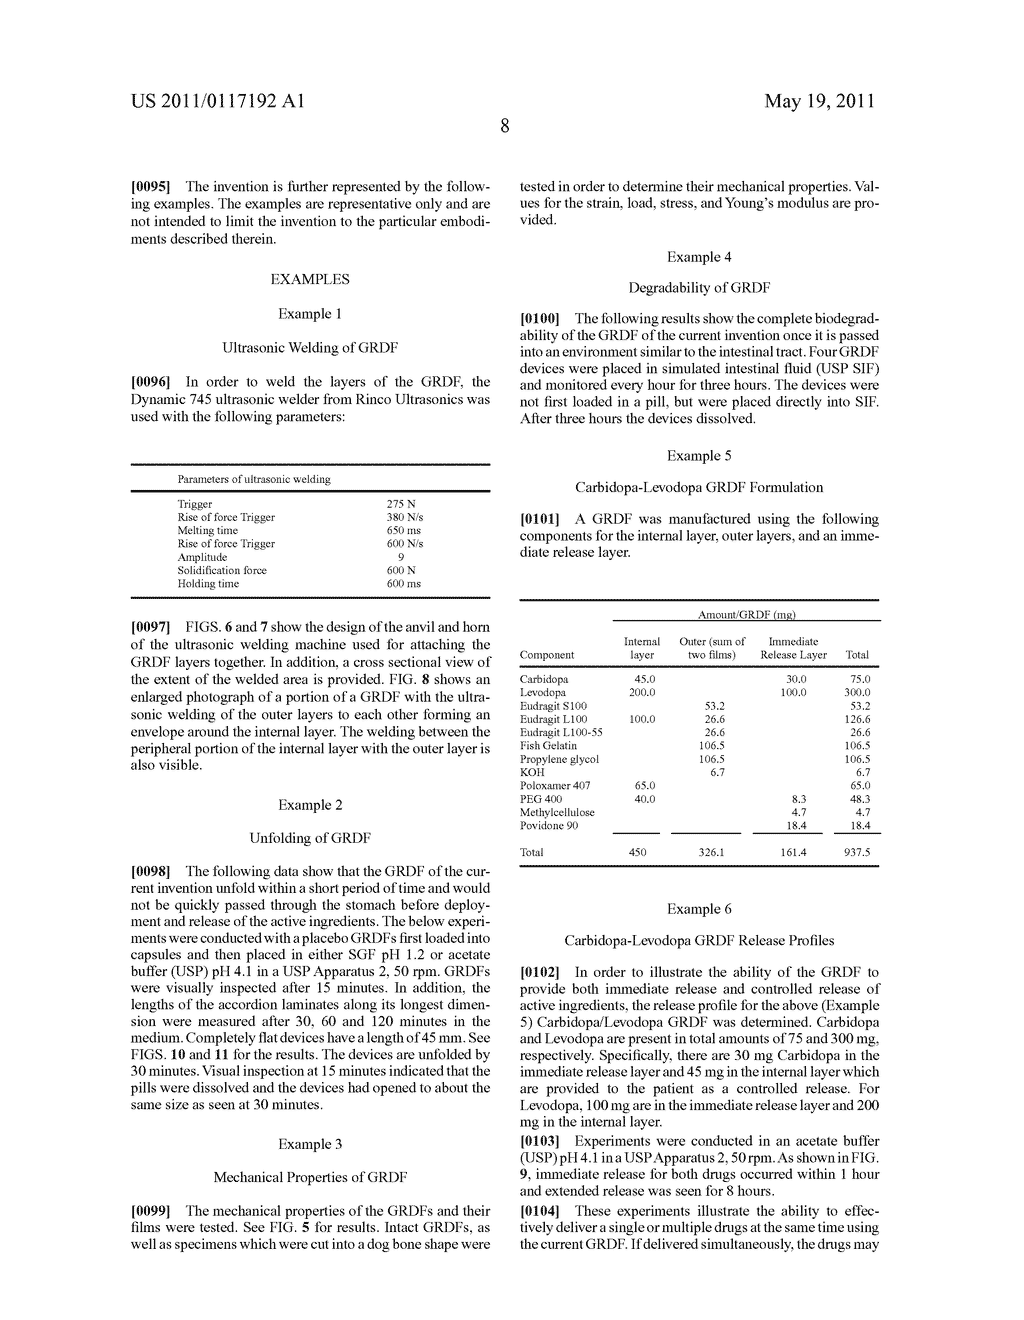 CARBIDOPA/LIPODOPA GASTRORETENTIVE DRUG DELIVERY - diagram, schematic, and image 22